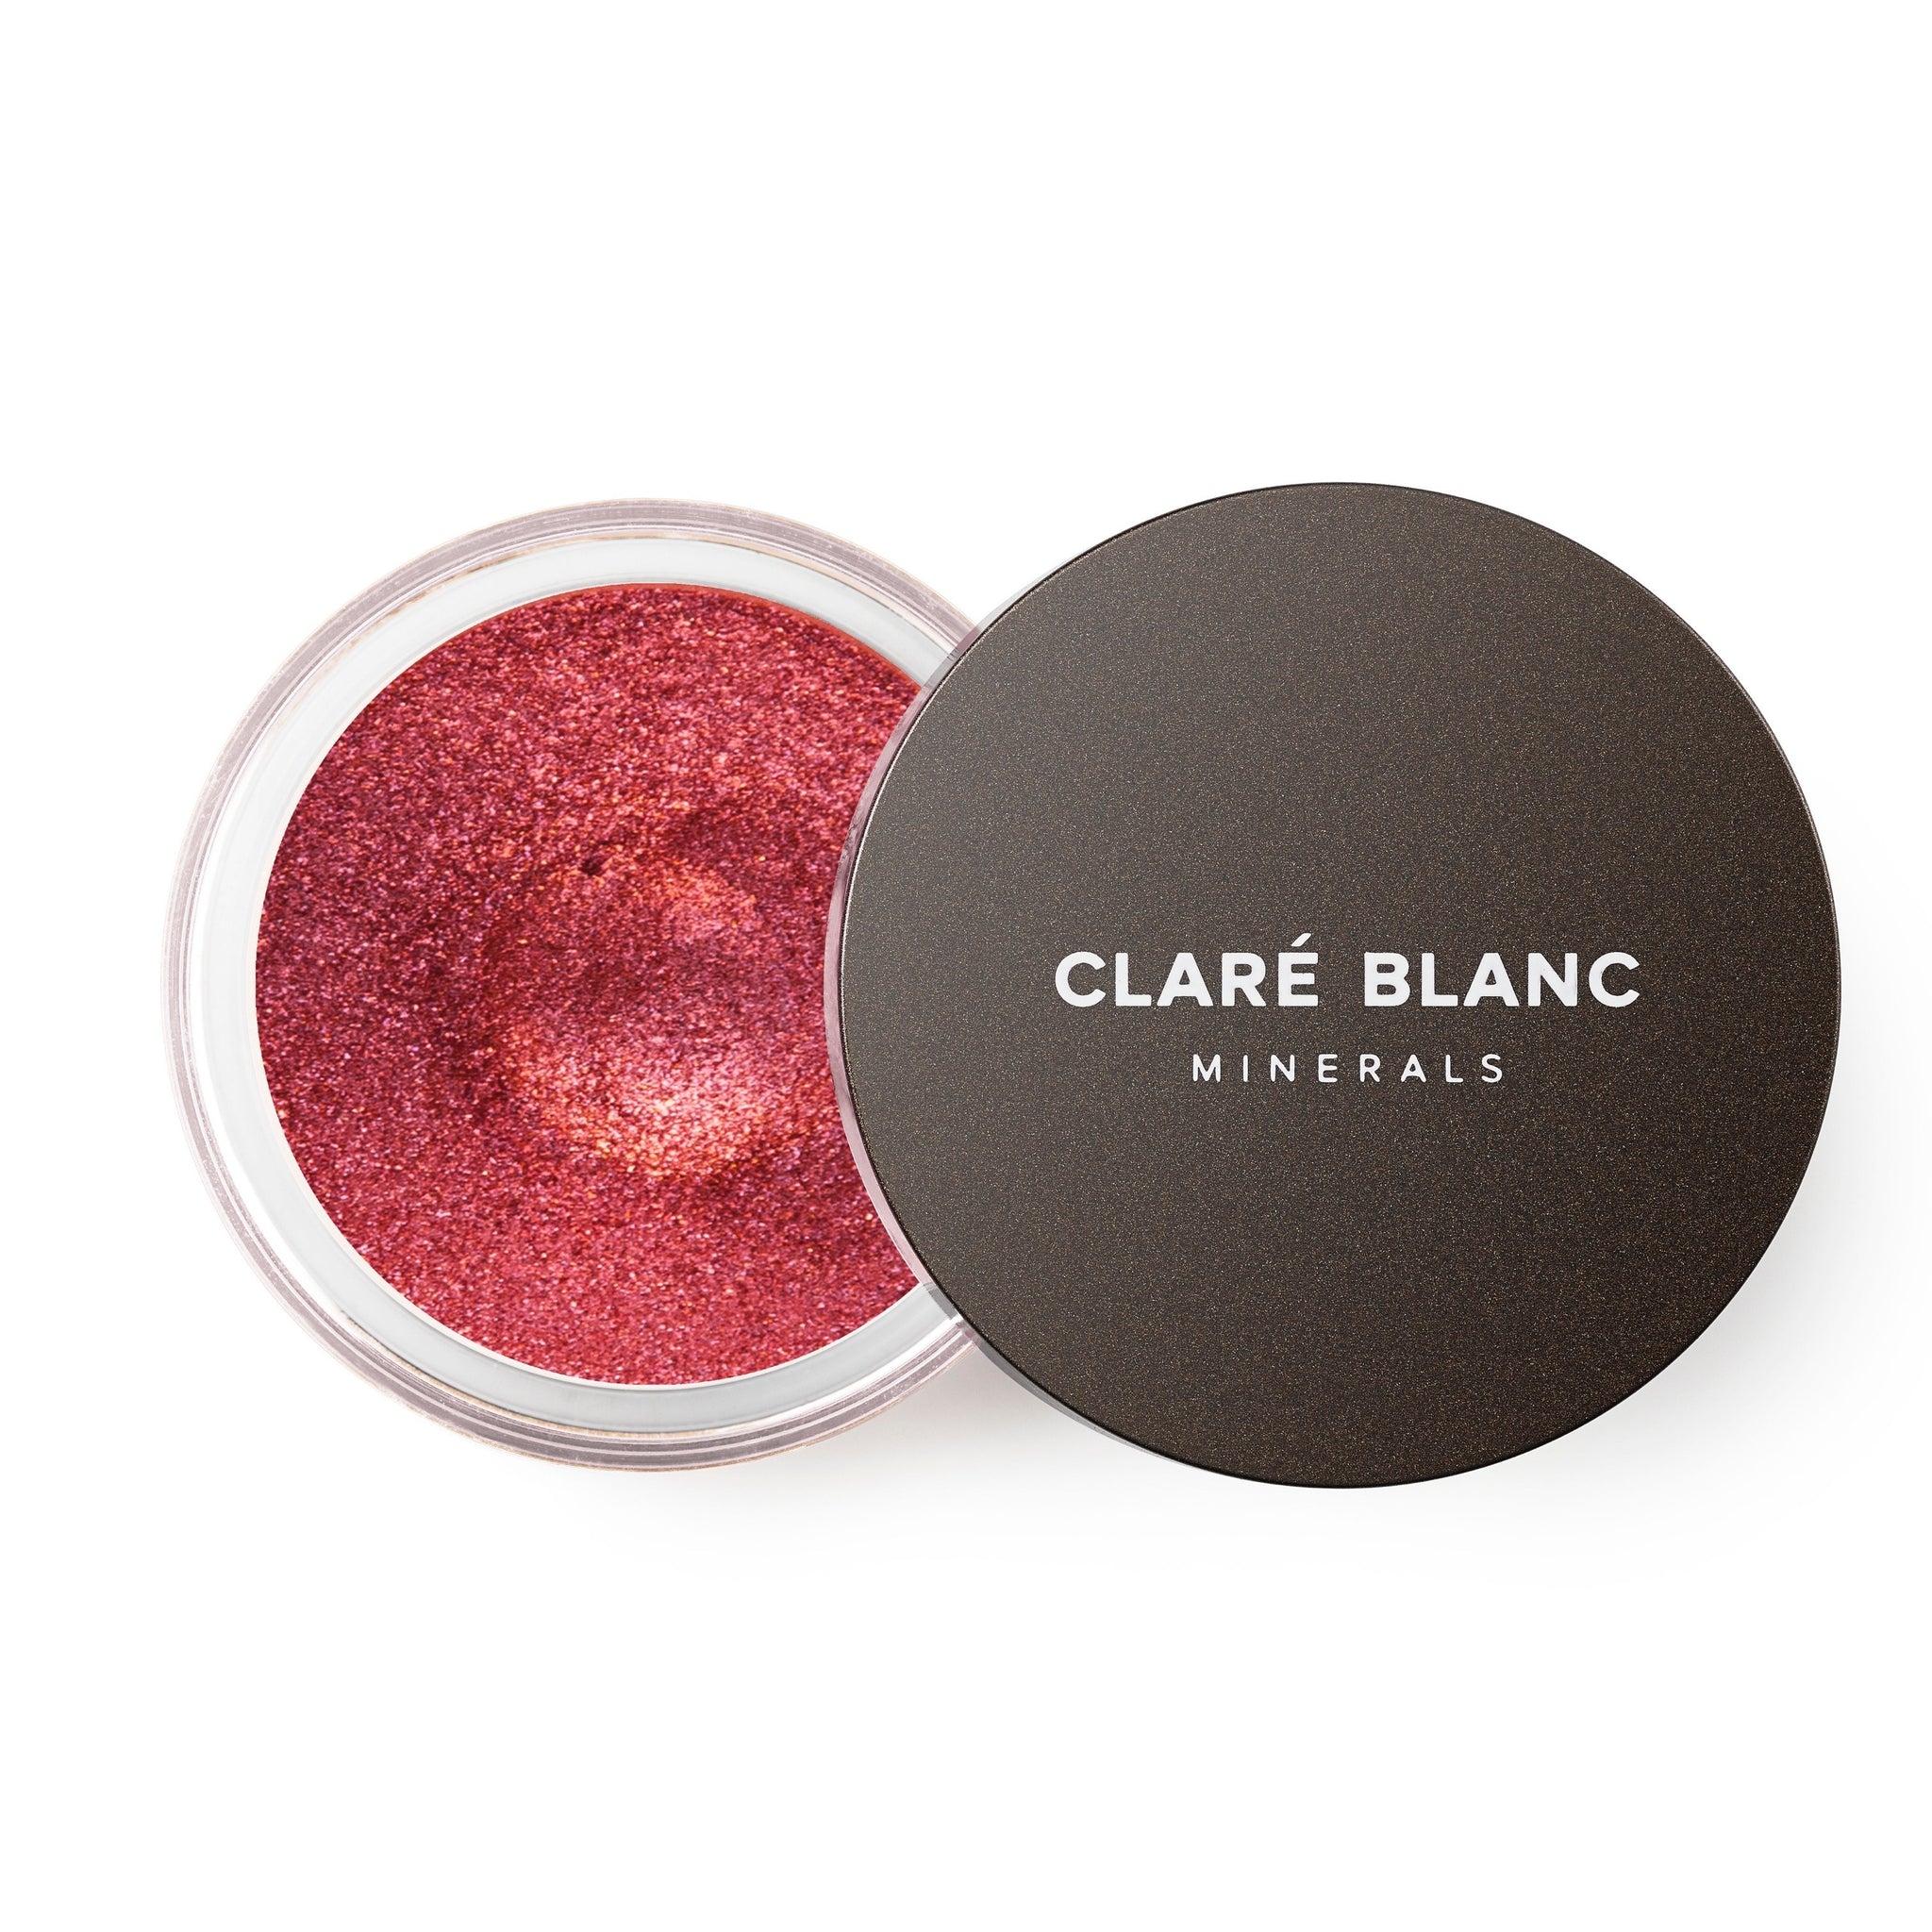 Clare Blanc ミネラルアイシャドウ 878P Golden Raspberry